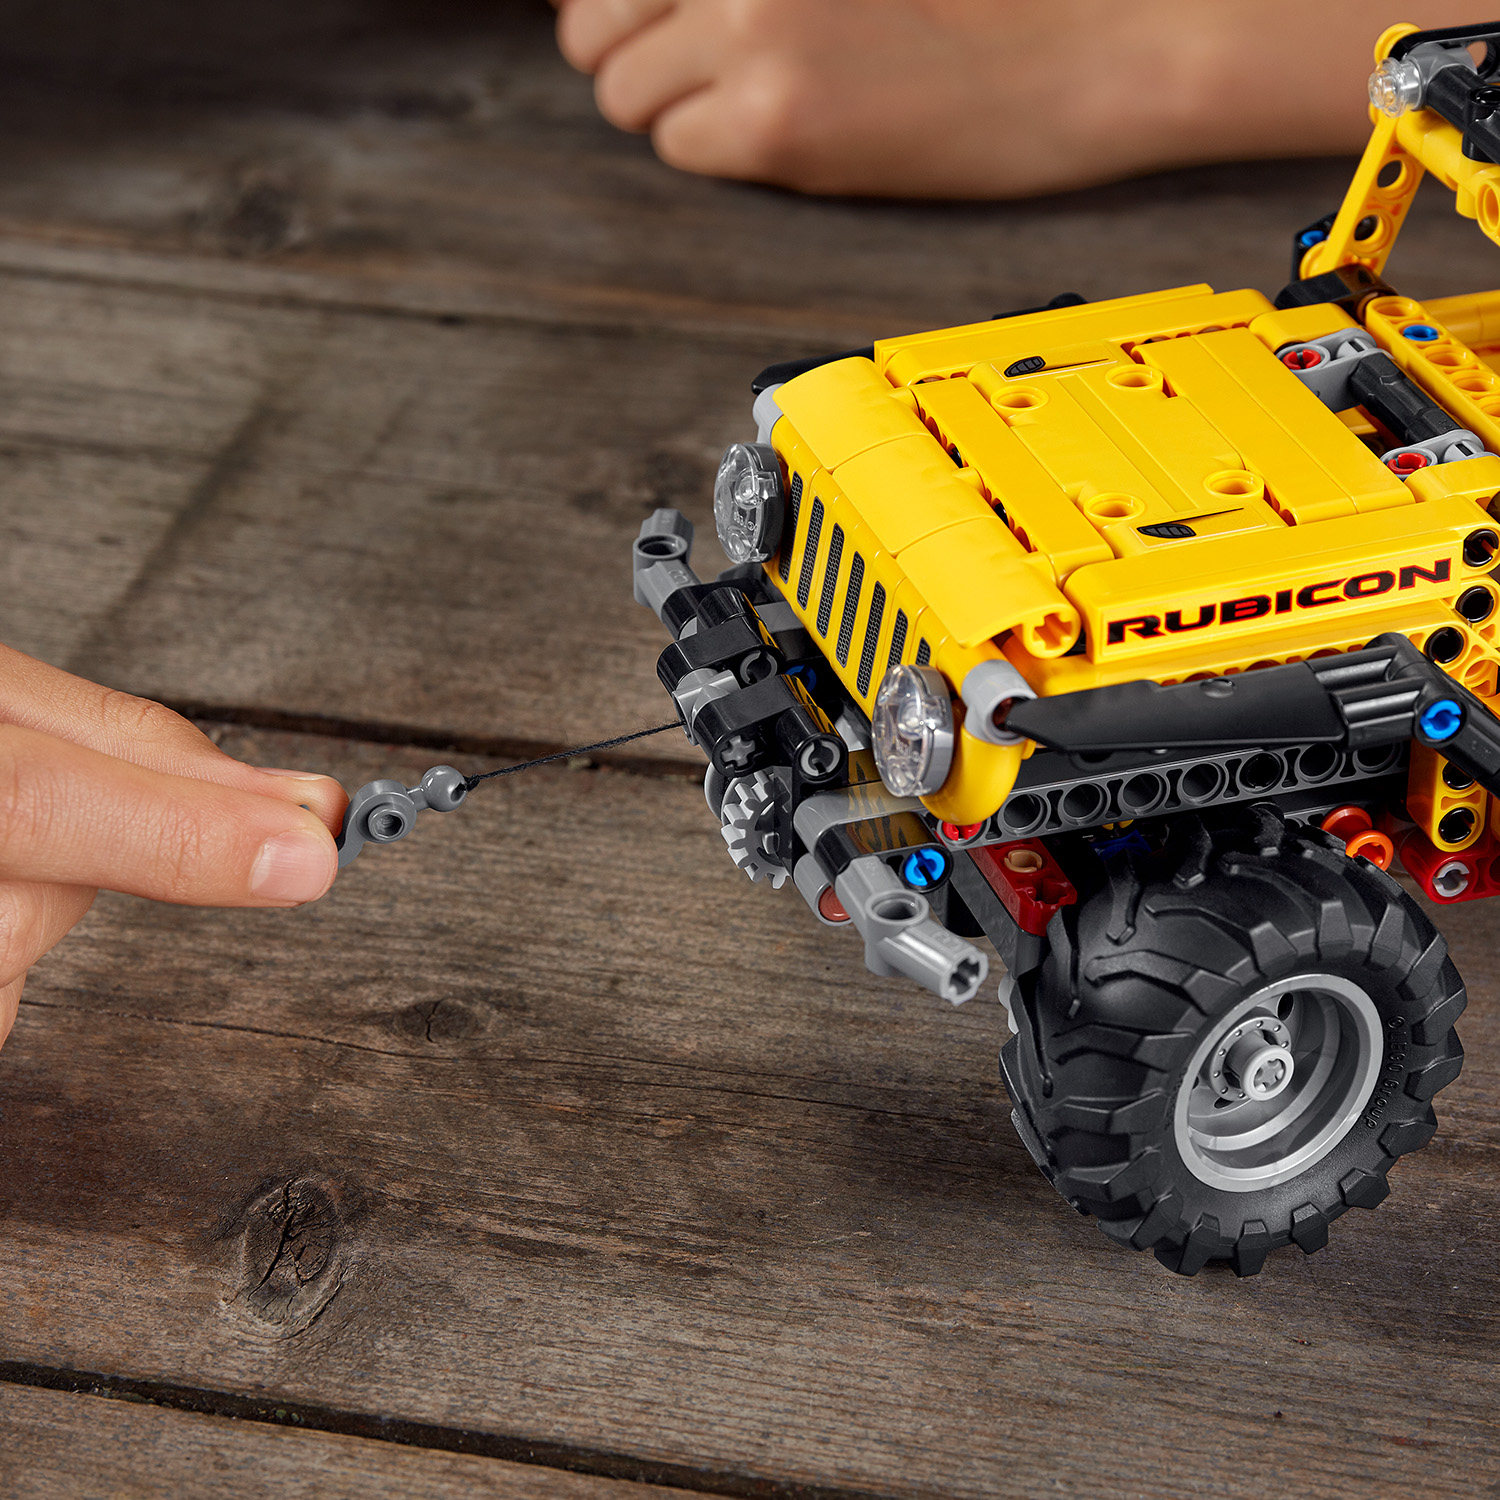 Đồ Chơi LEGO TECHNIC Xe Địa Hình Jeep Wrangler 42122 